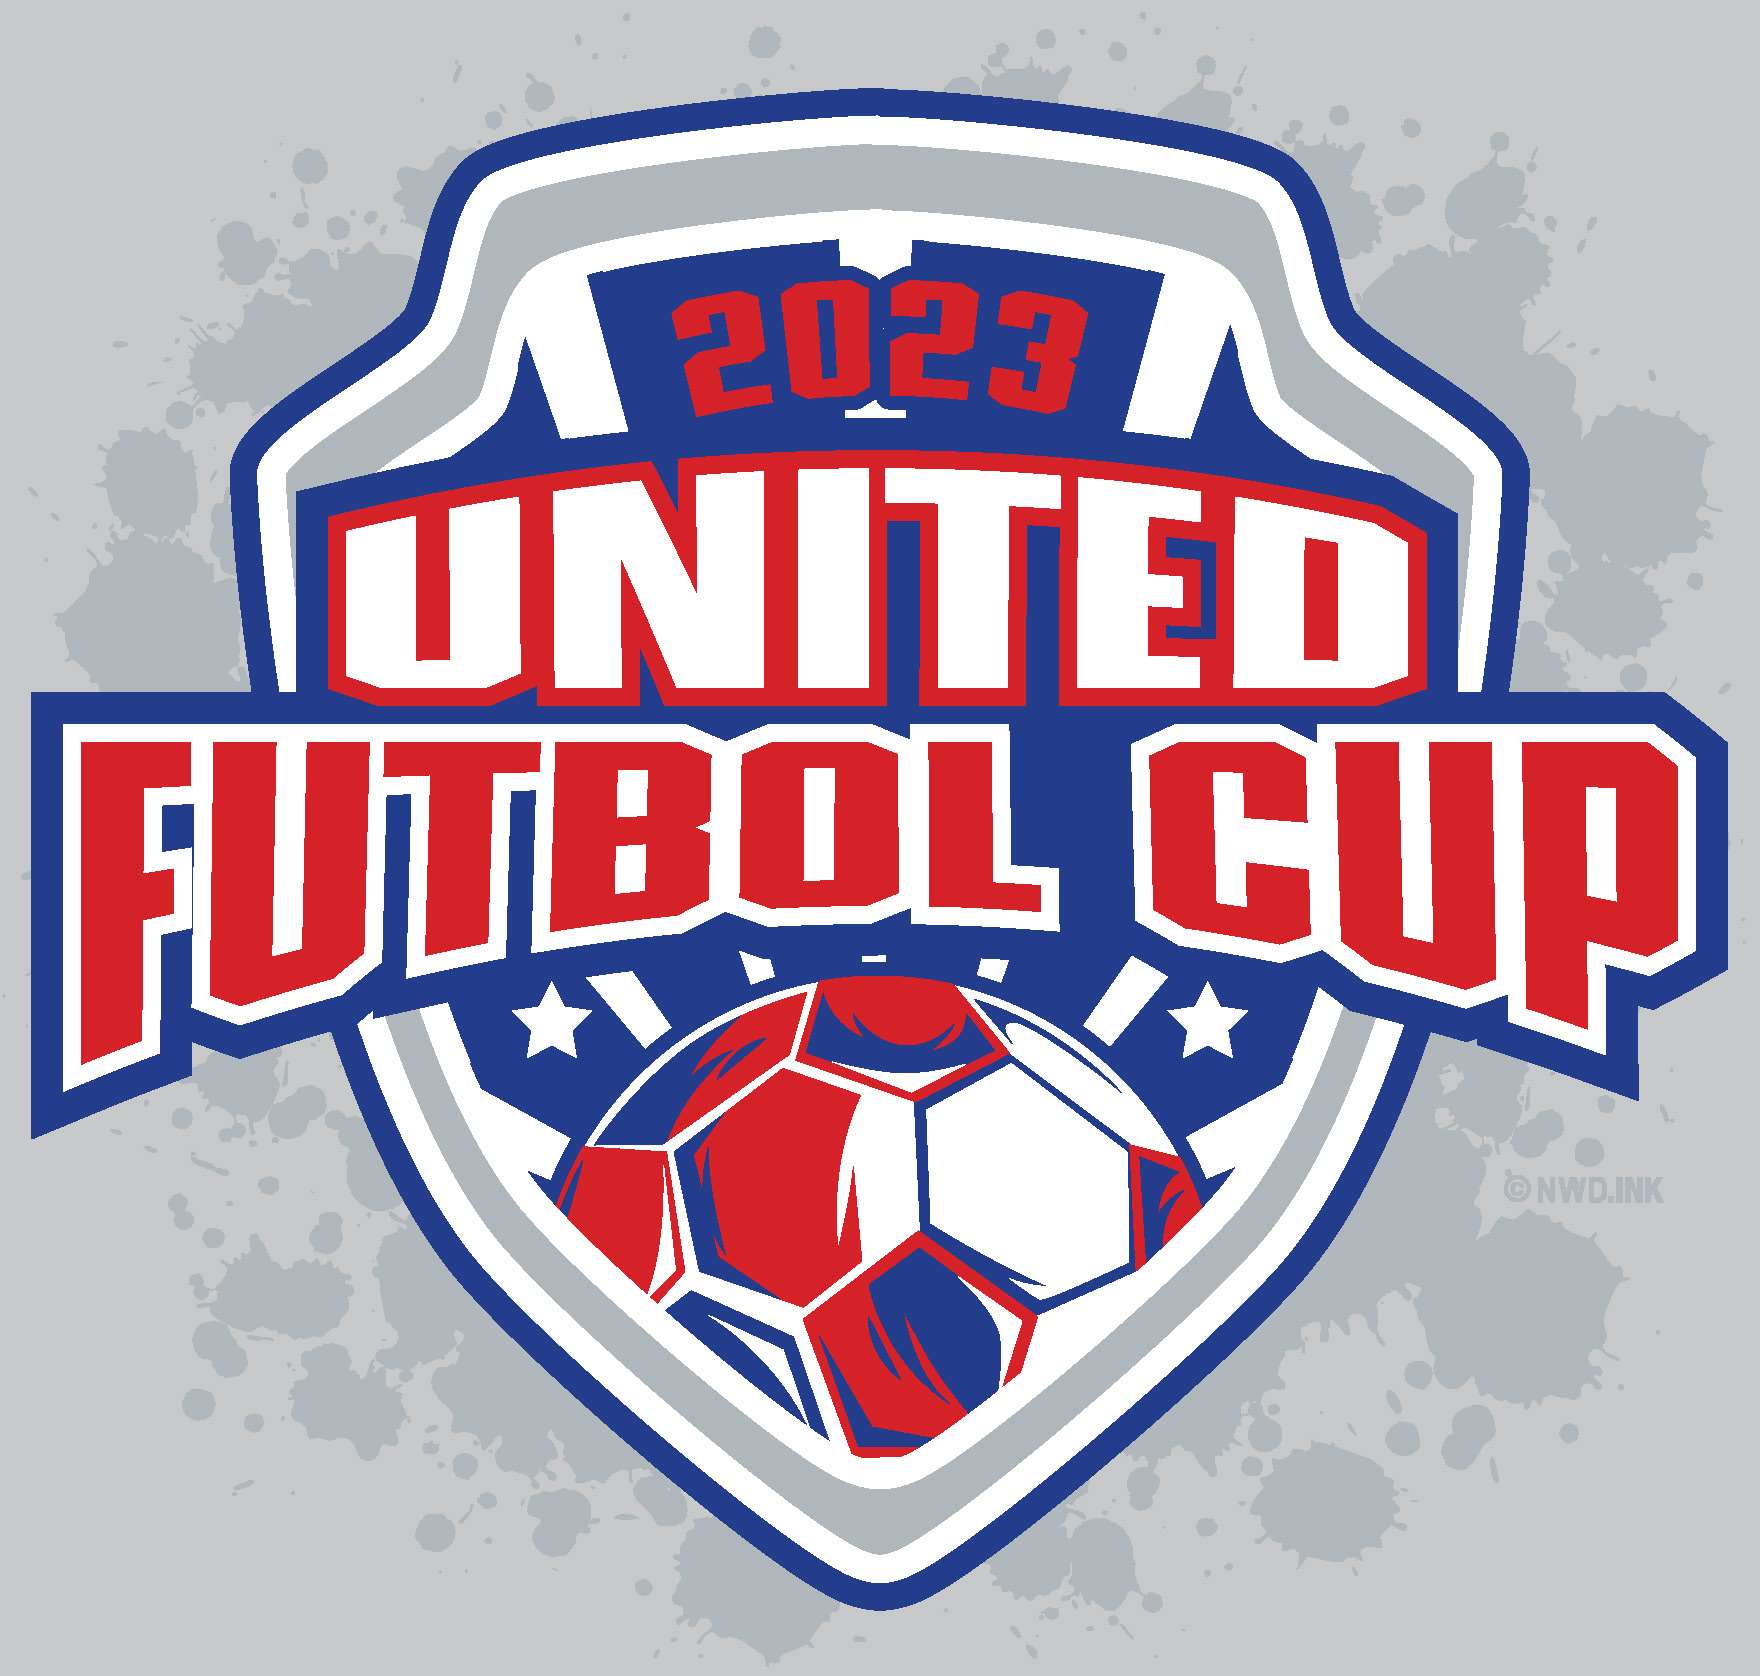 United Futbol Cup